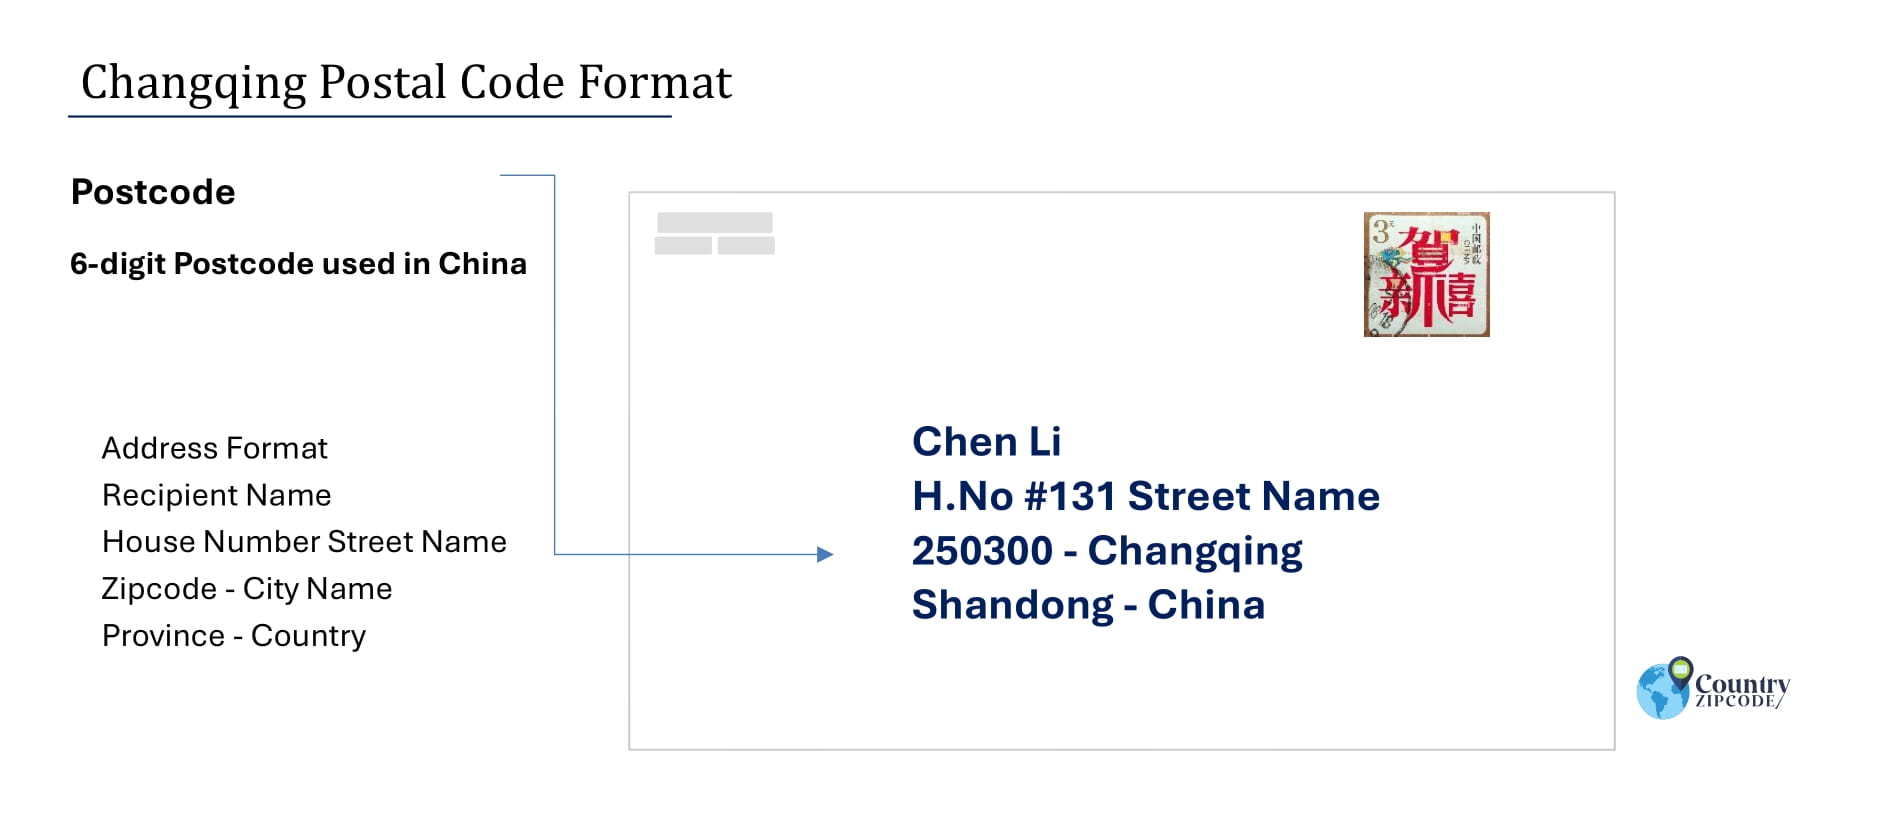 Example of ChangqingChinaPostalcodeandAddressformat